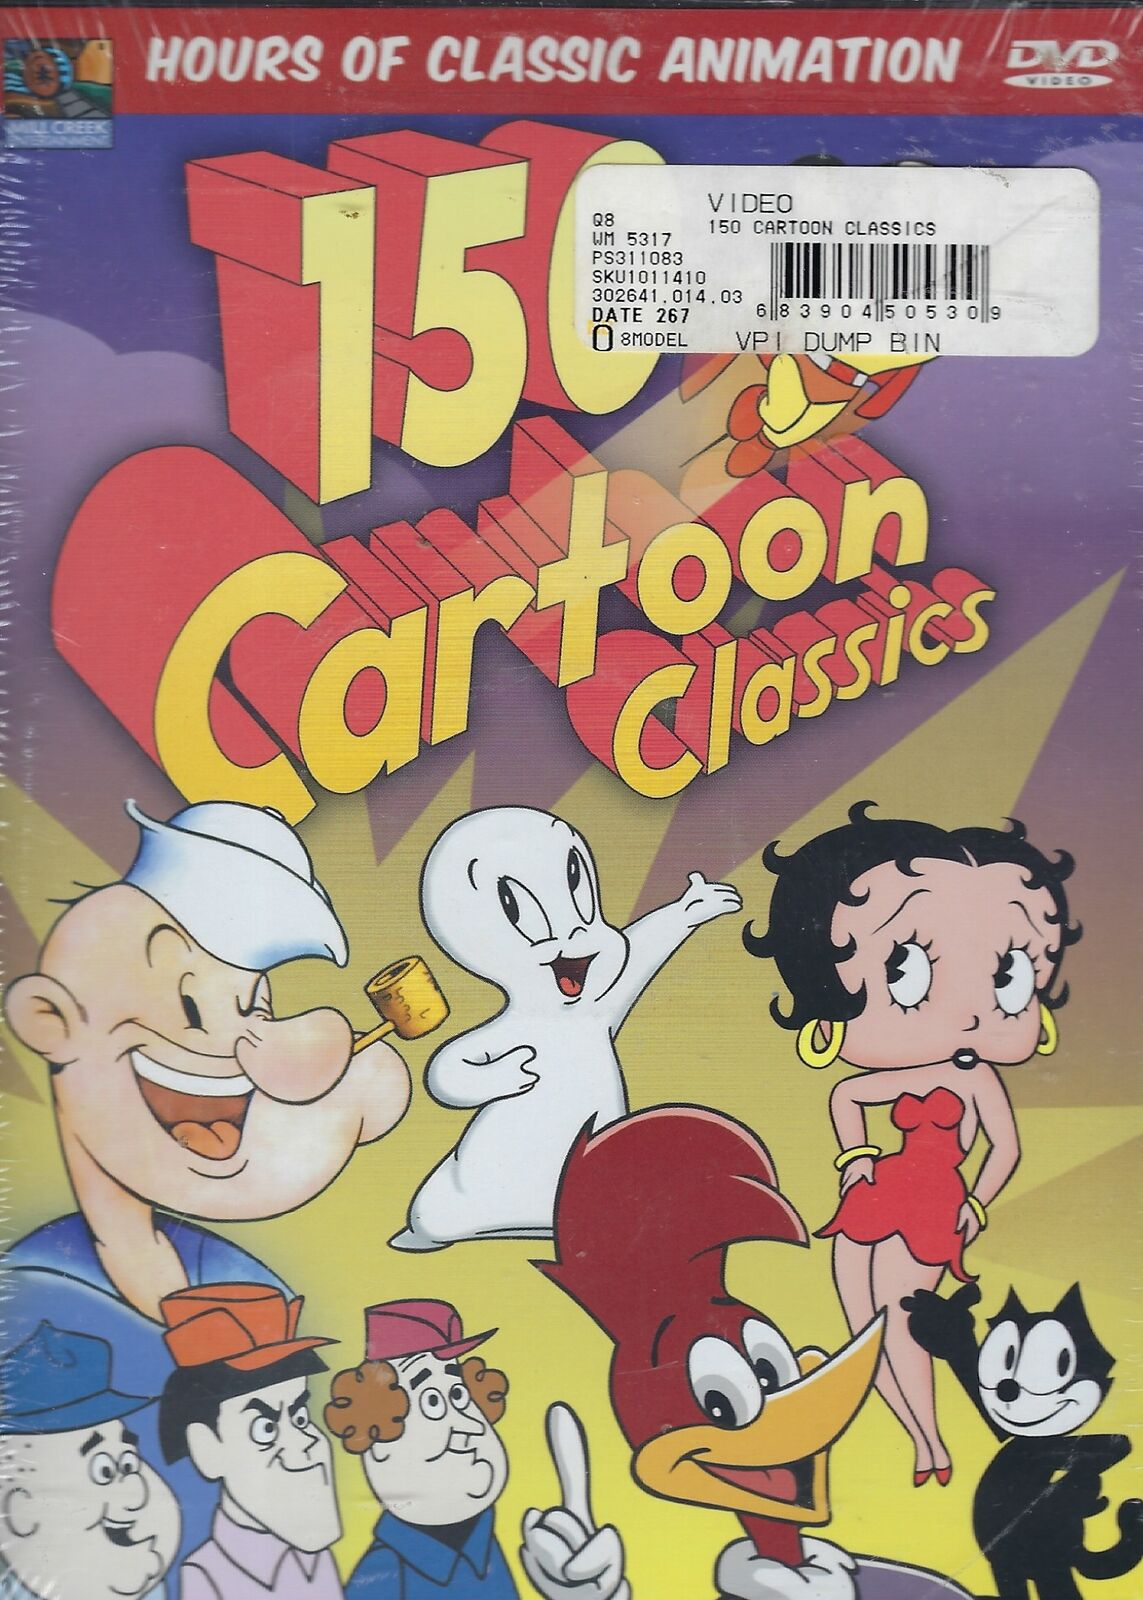 150 Cartoon Classics 4 Disc Set DVD